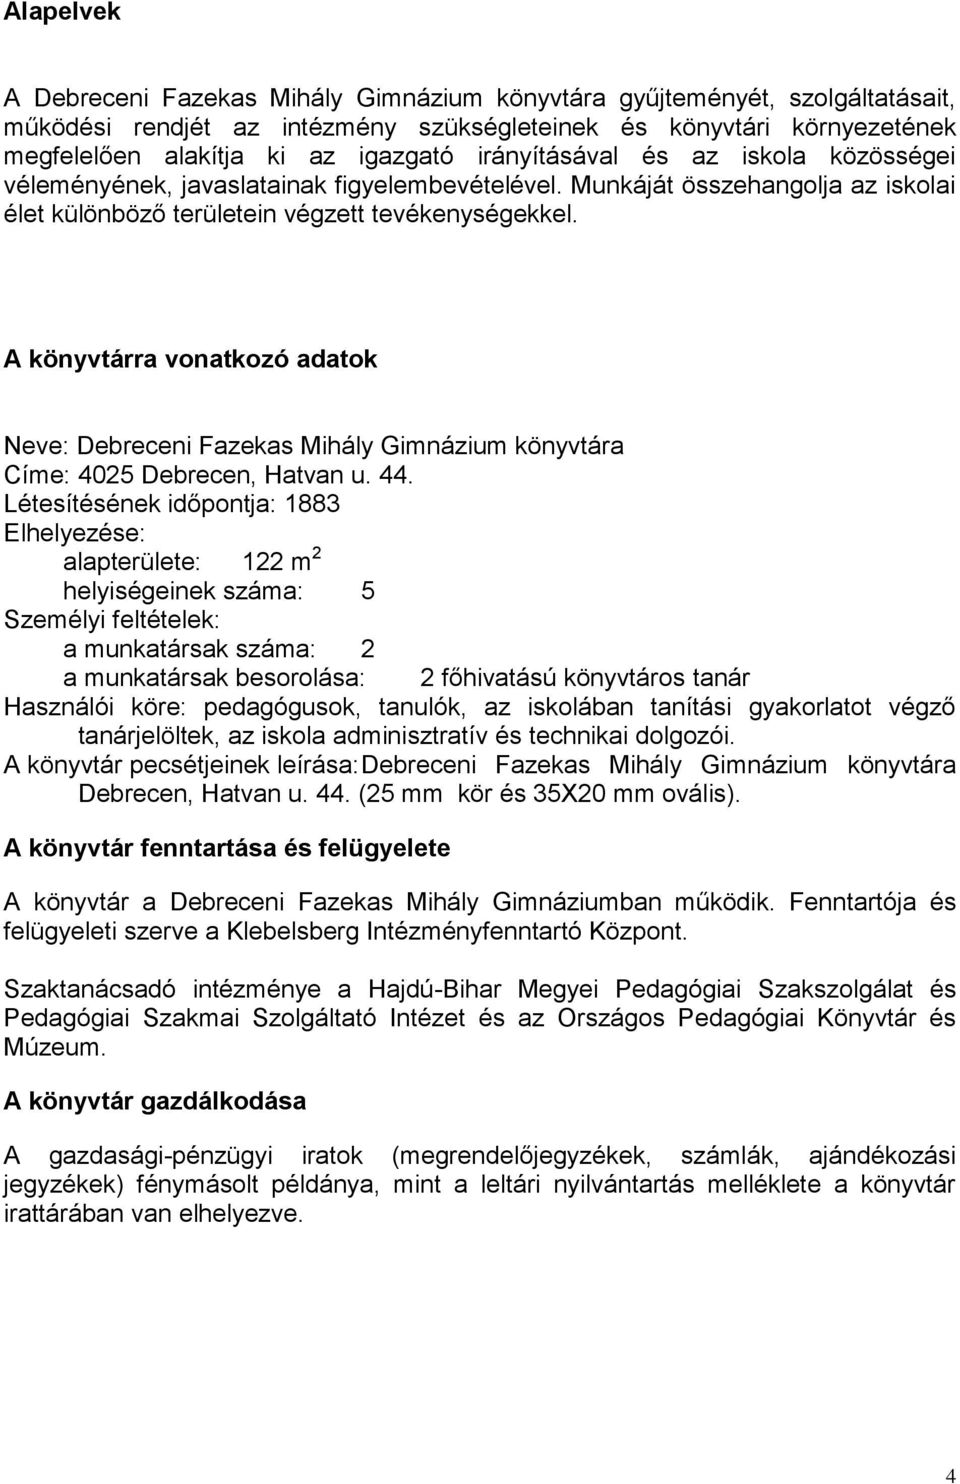 A könyvtárra vonatkozó adatok Neve: Debreceni Fazekas Mihály Gimnázium könyvtára Címe: 4025 Debrecen, Hatvan u. 44.